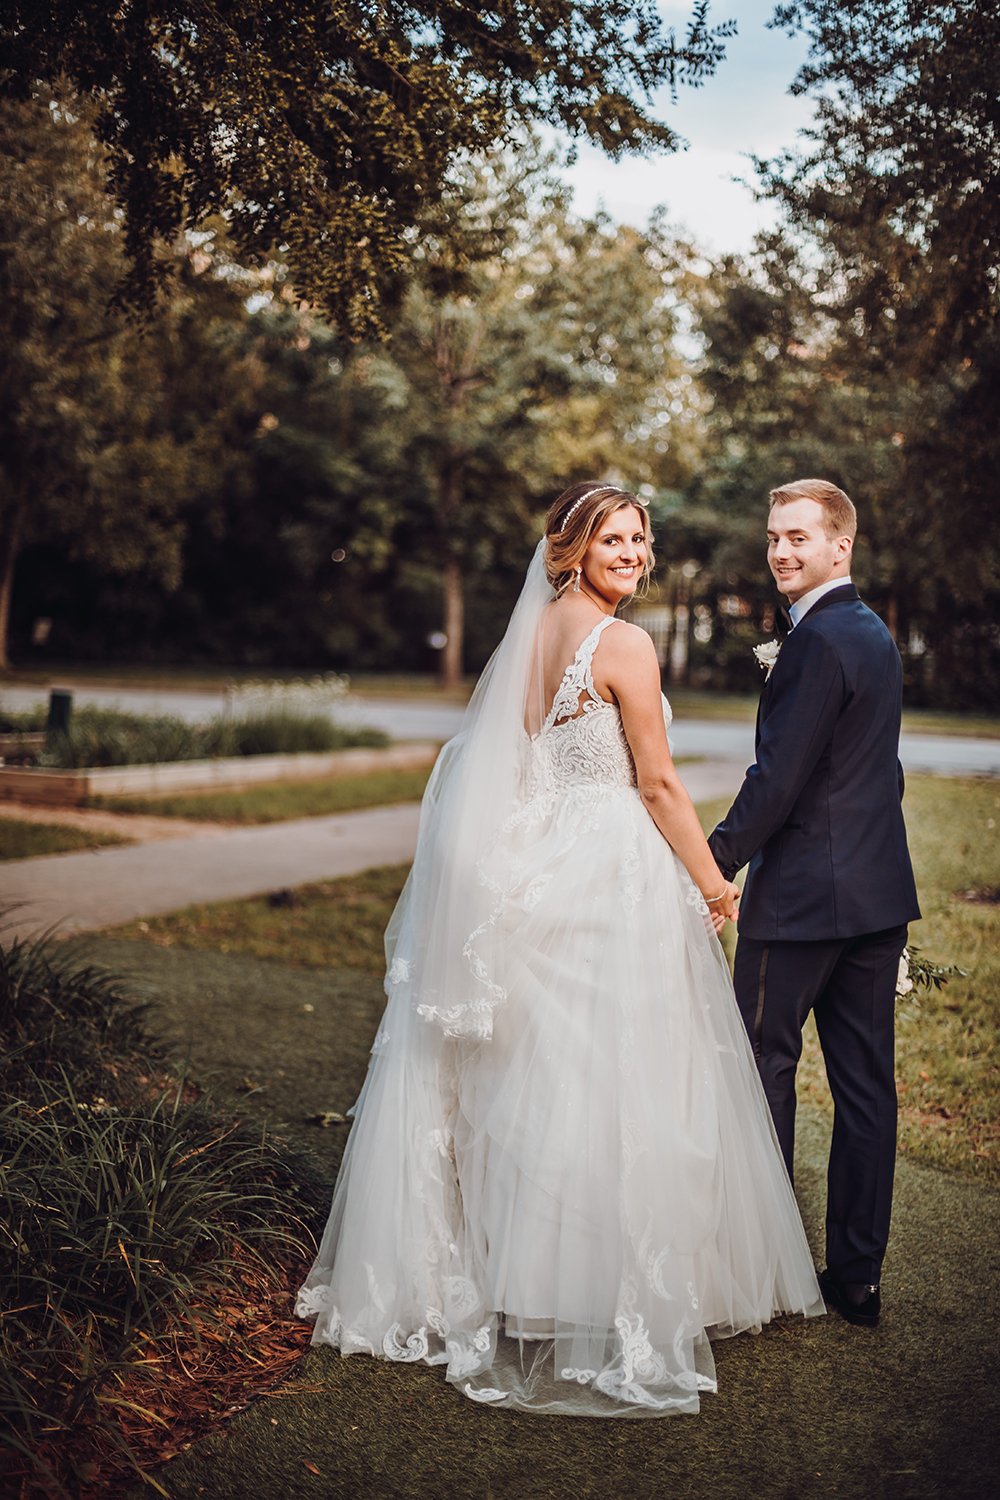 Dana + Zachary - Real Houston Wedding - Weddings in Houston